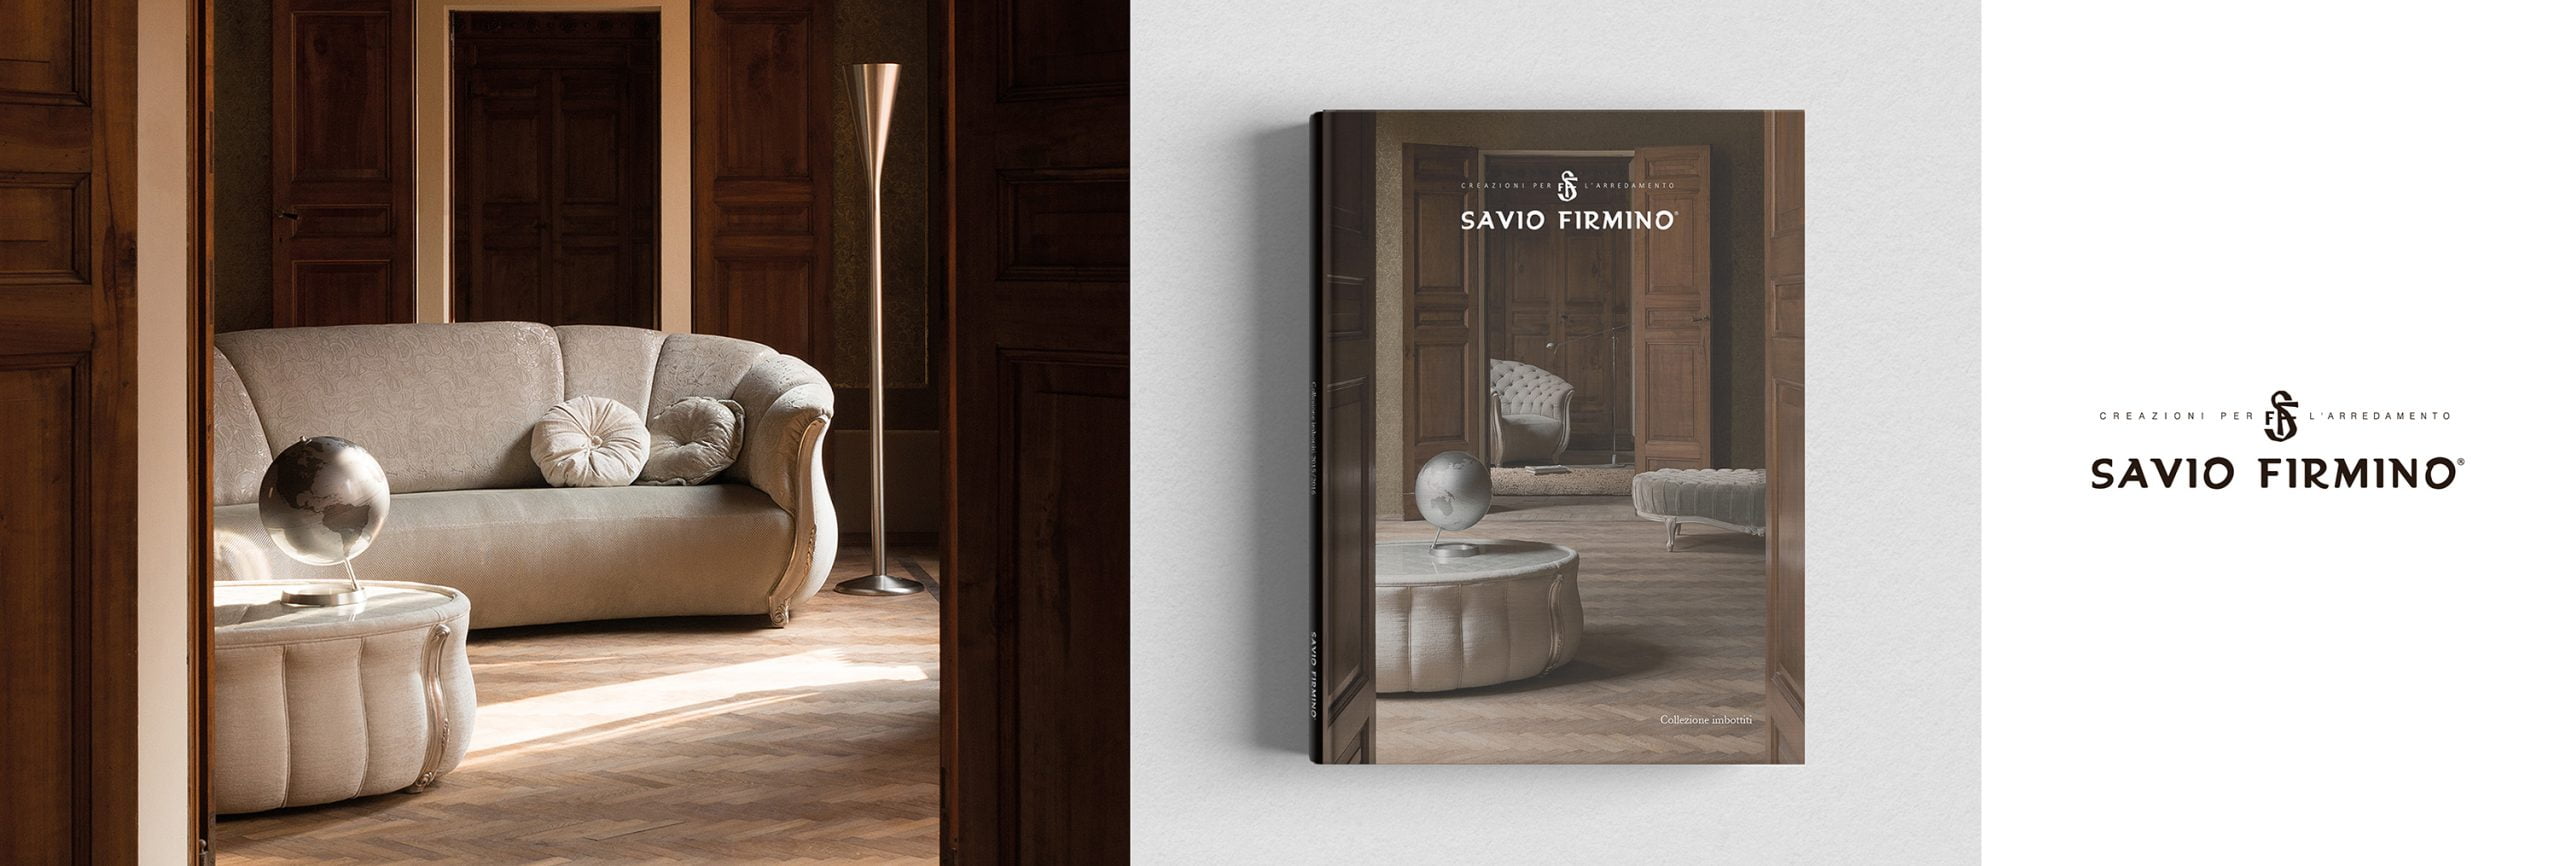 Branding: Savio Firmino Photo shooting e catalogo